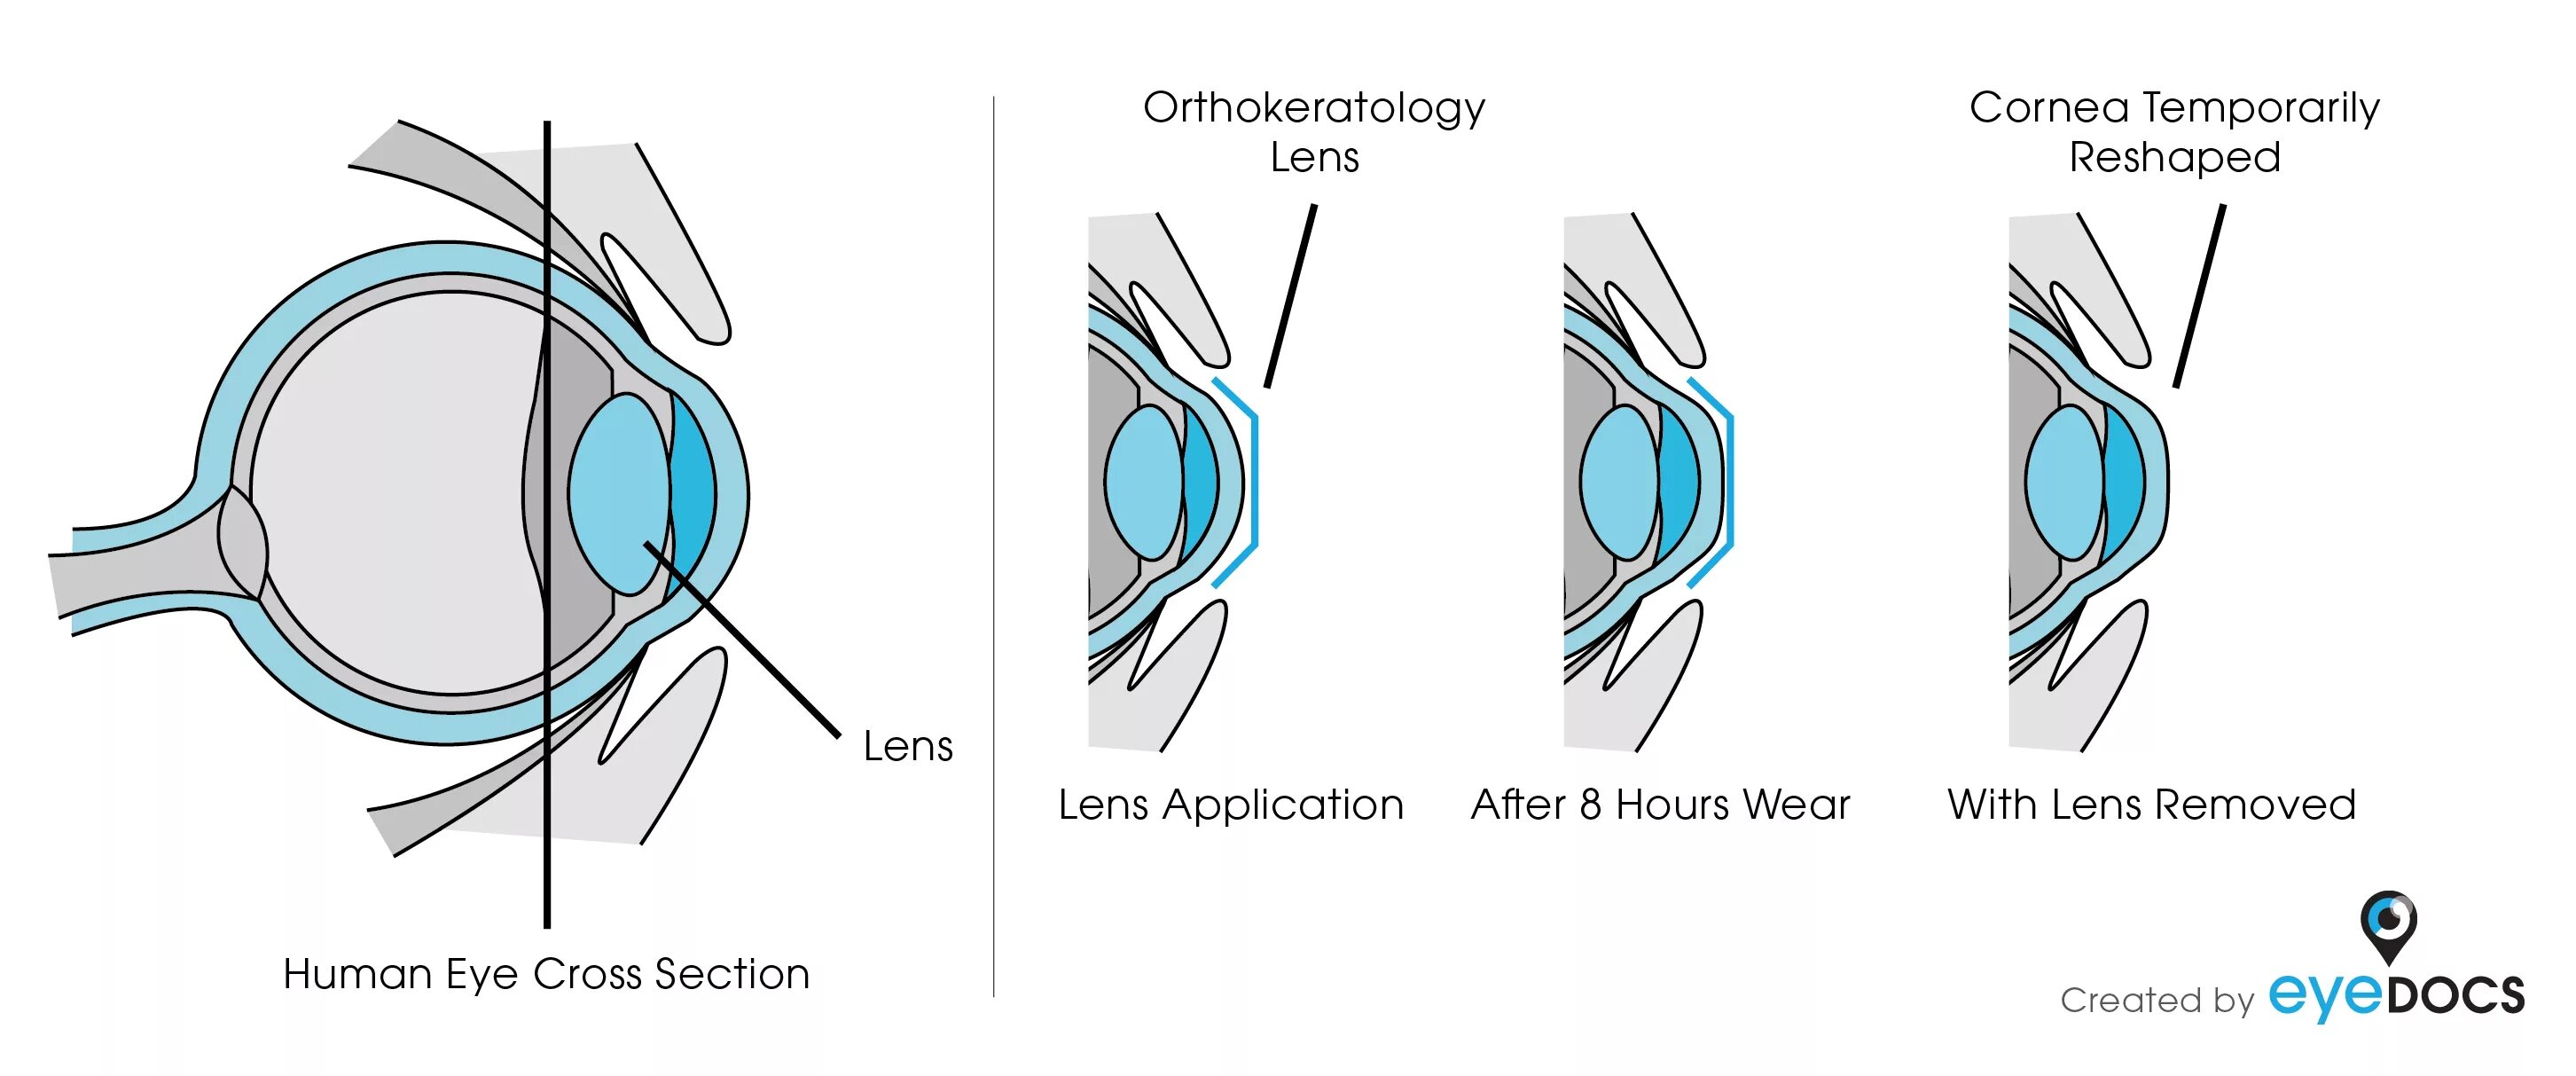 Жесткие ночные ортокератологические линзы. Ортокератология ночные линзы. Ночные жесткие линзы для восстановления зрения. Как работают ортокератологические линзы. Зрение 2 операция